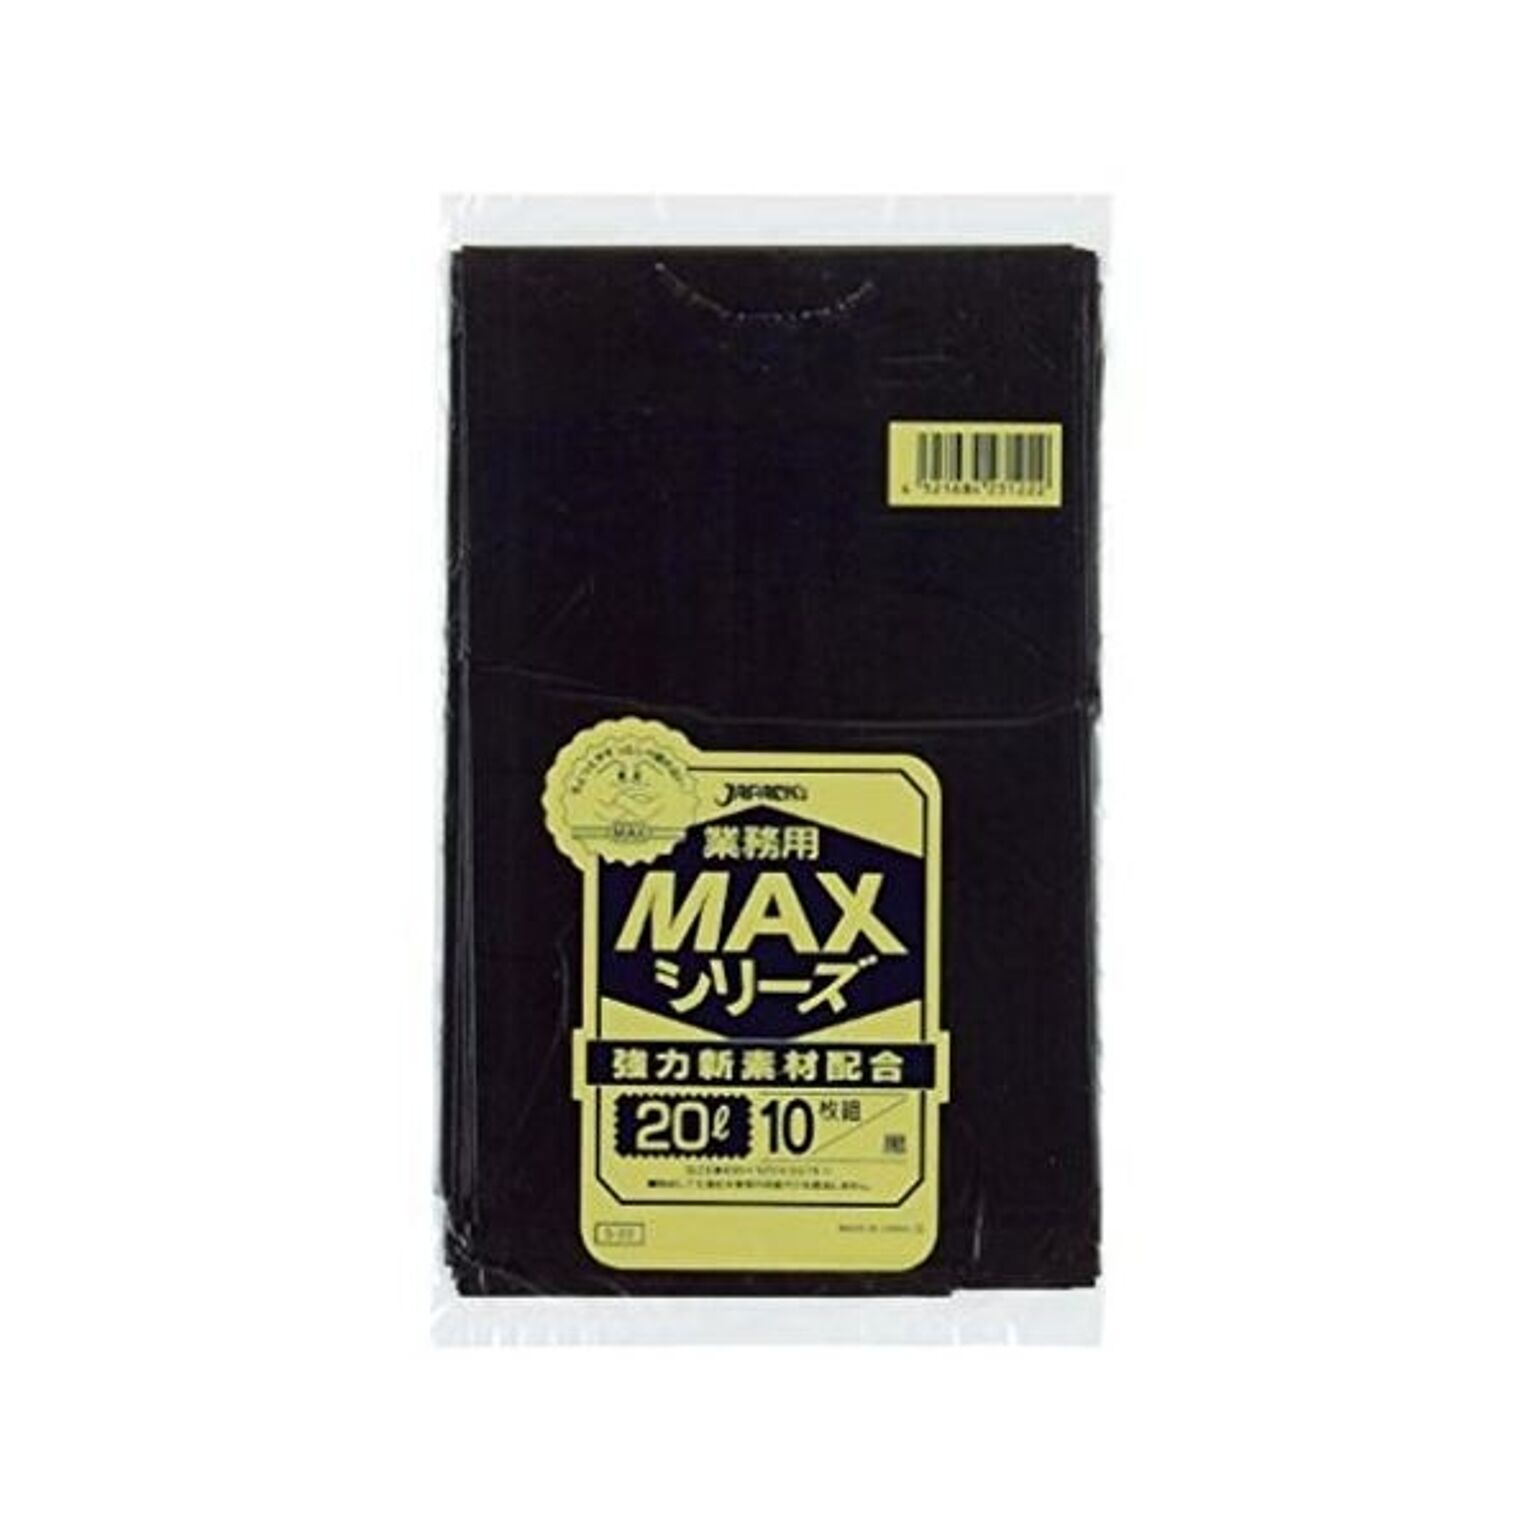 業務用MAX20L 10枚入015HD+LD黒 S22 （60袋×5ケース）合計300袋セット 38-323